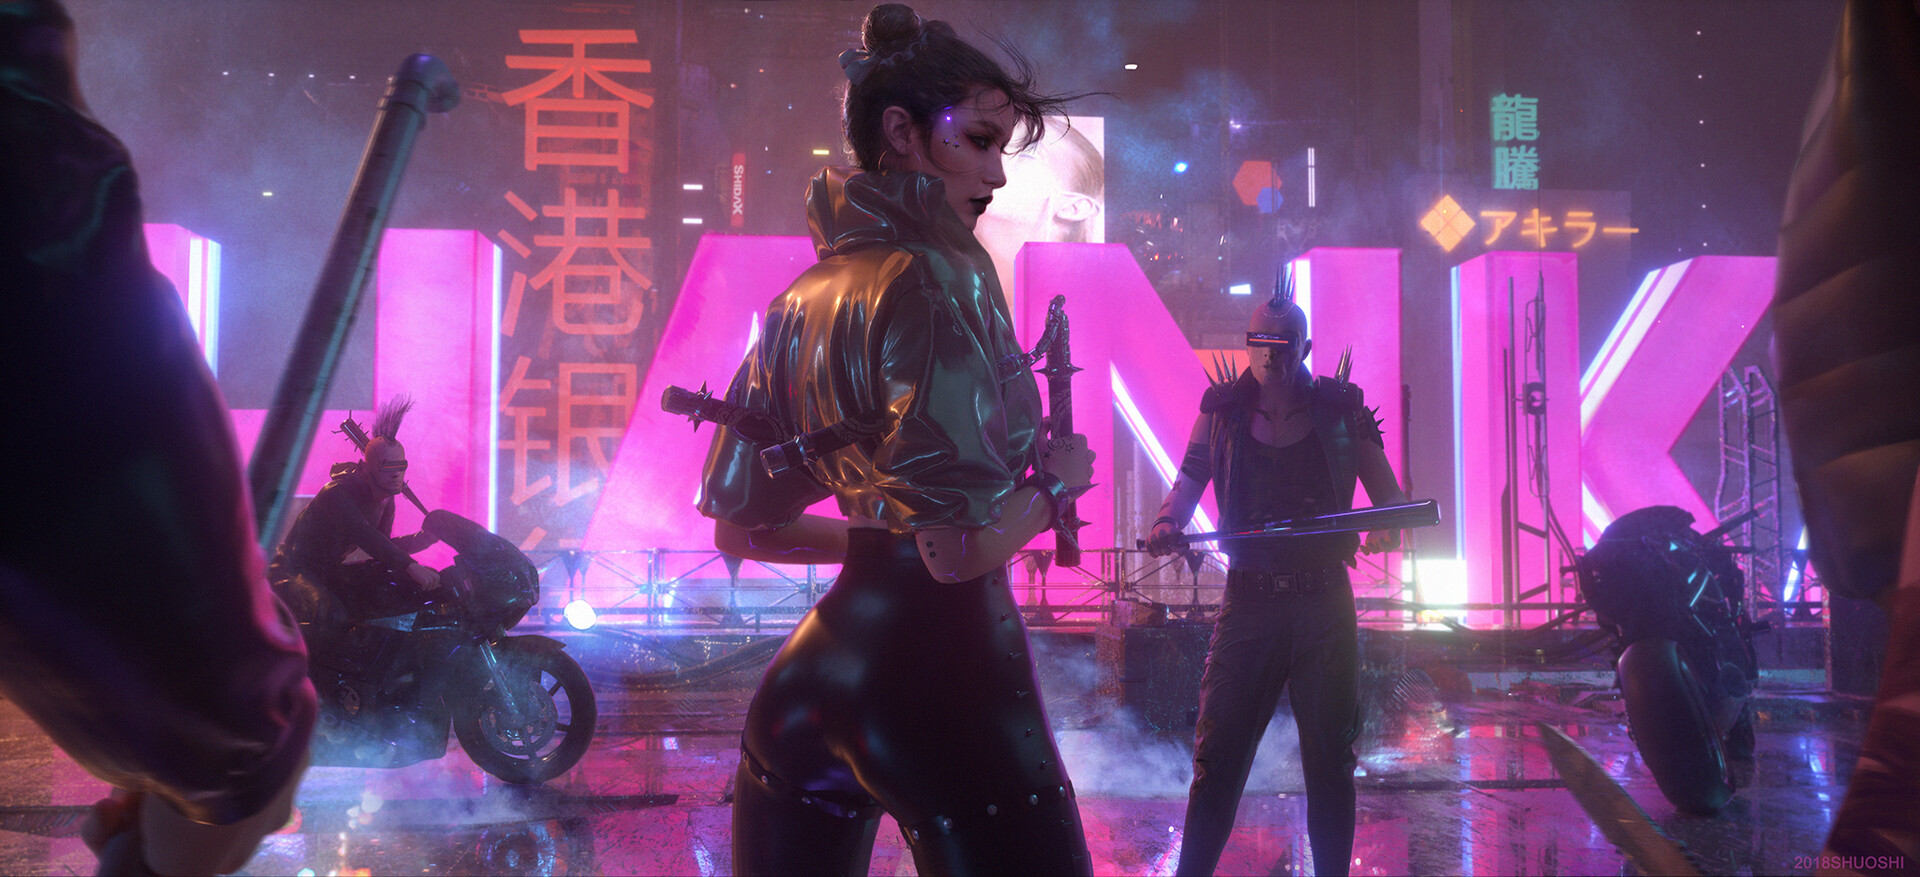 Cyberpunk Bikes Women Asian Futuristic Science Fiction Pink Shuo Shi 1920x877